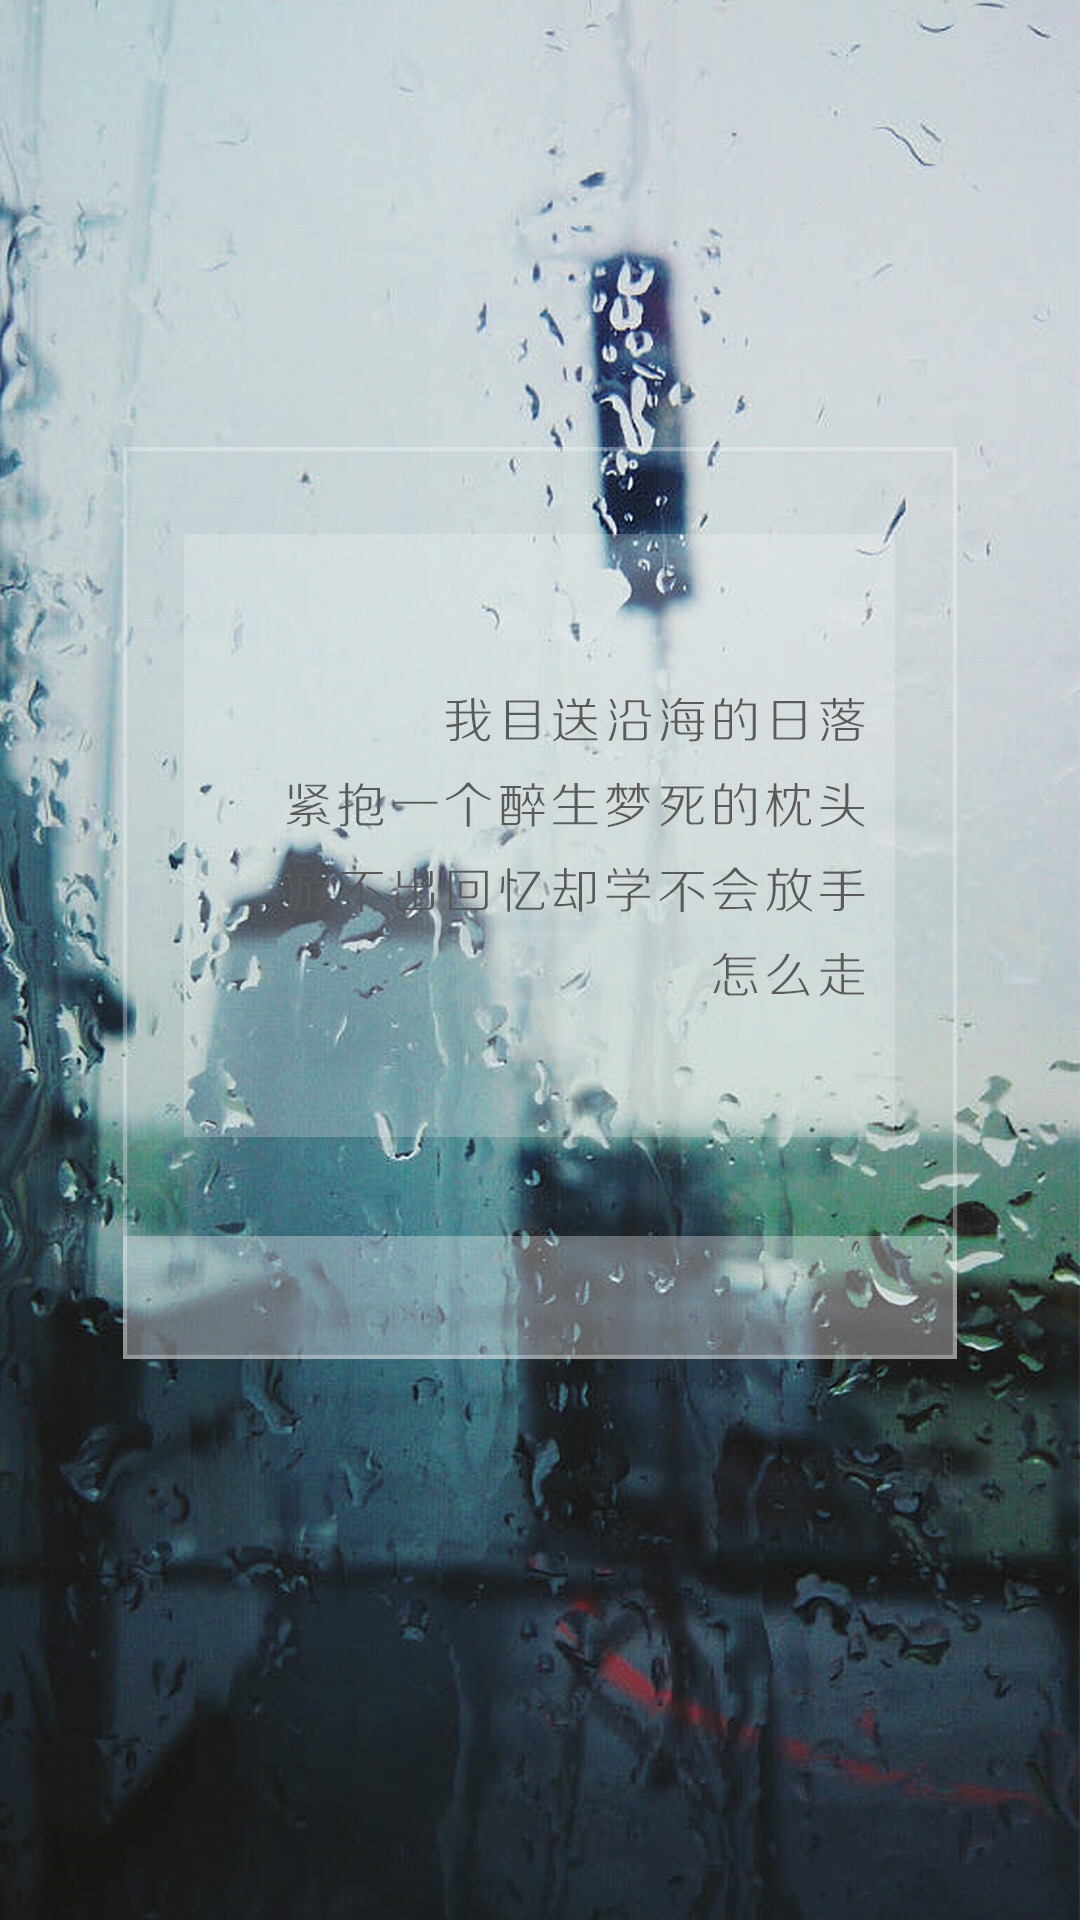 下雨天图片带字 关于下雨的唯美图片